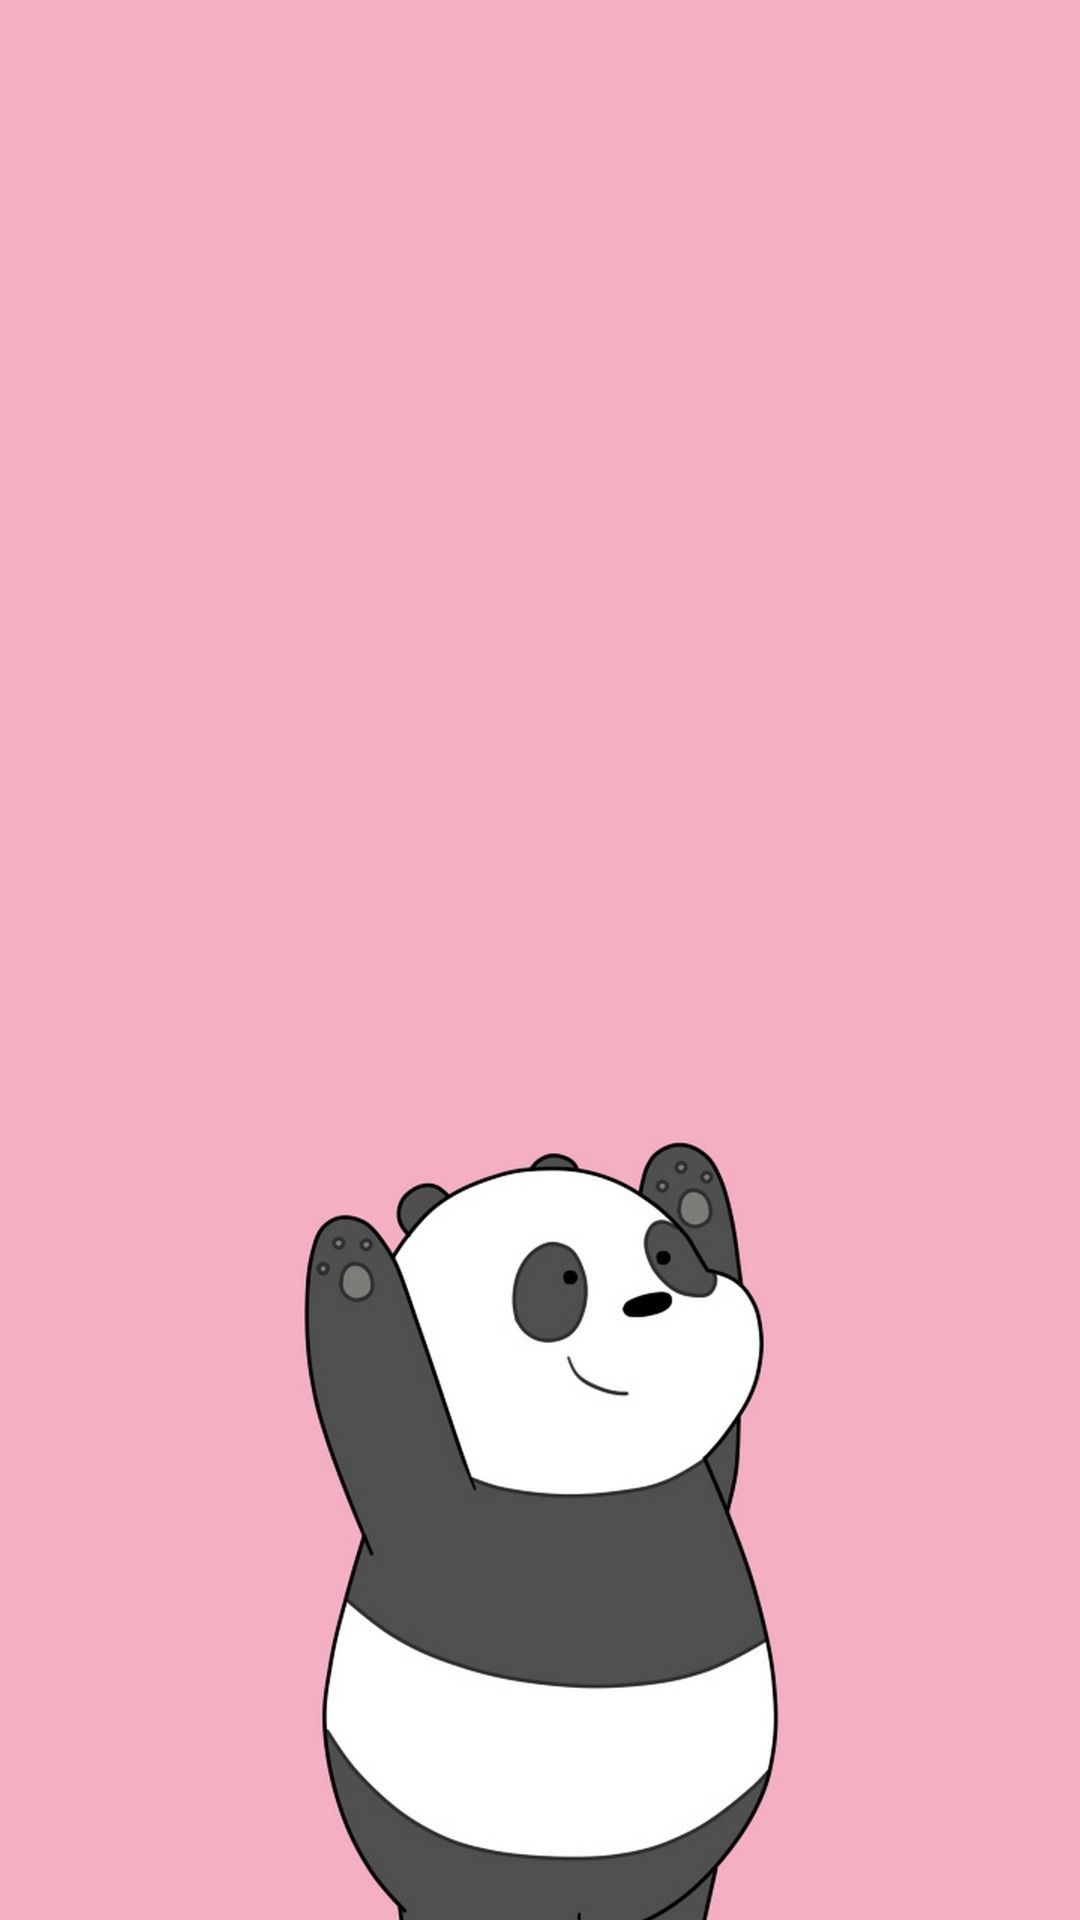 Cute Cartoon Panda Wallpapers